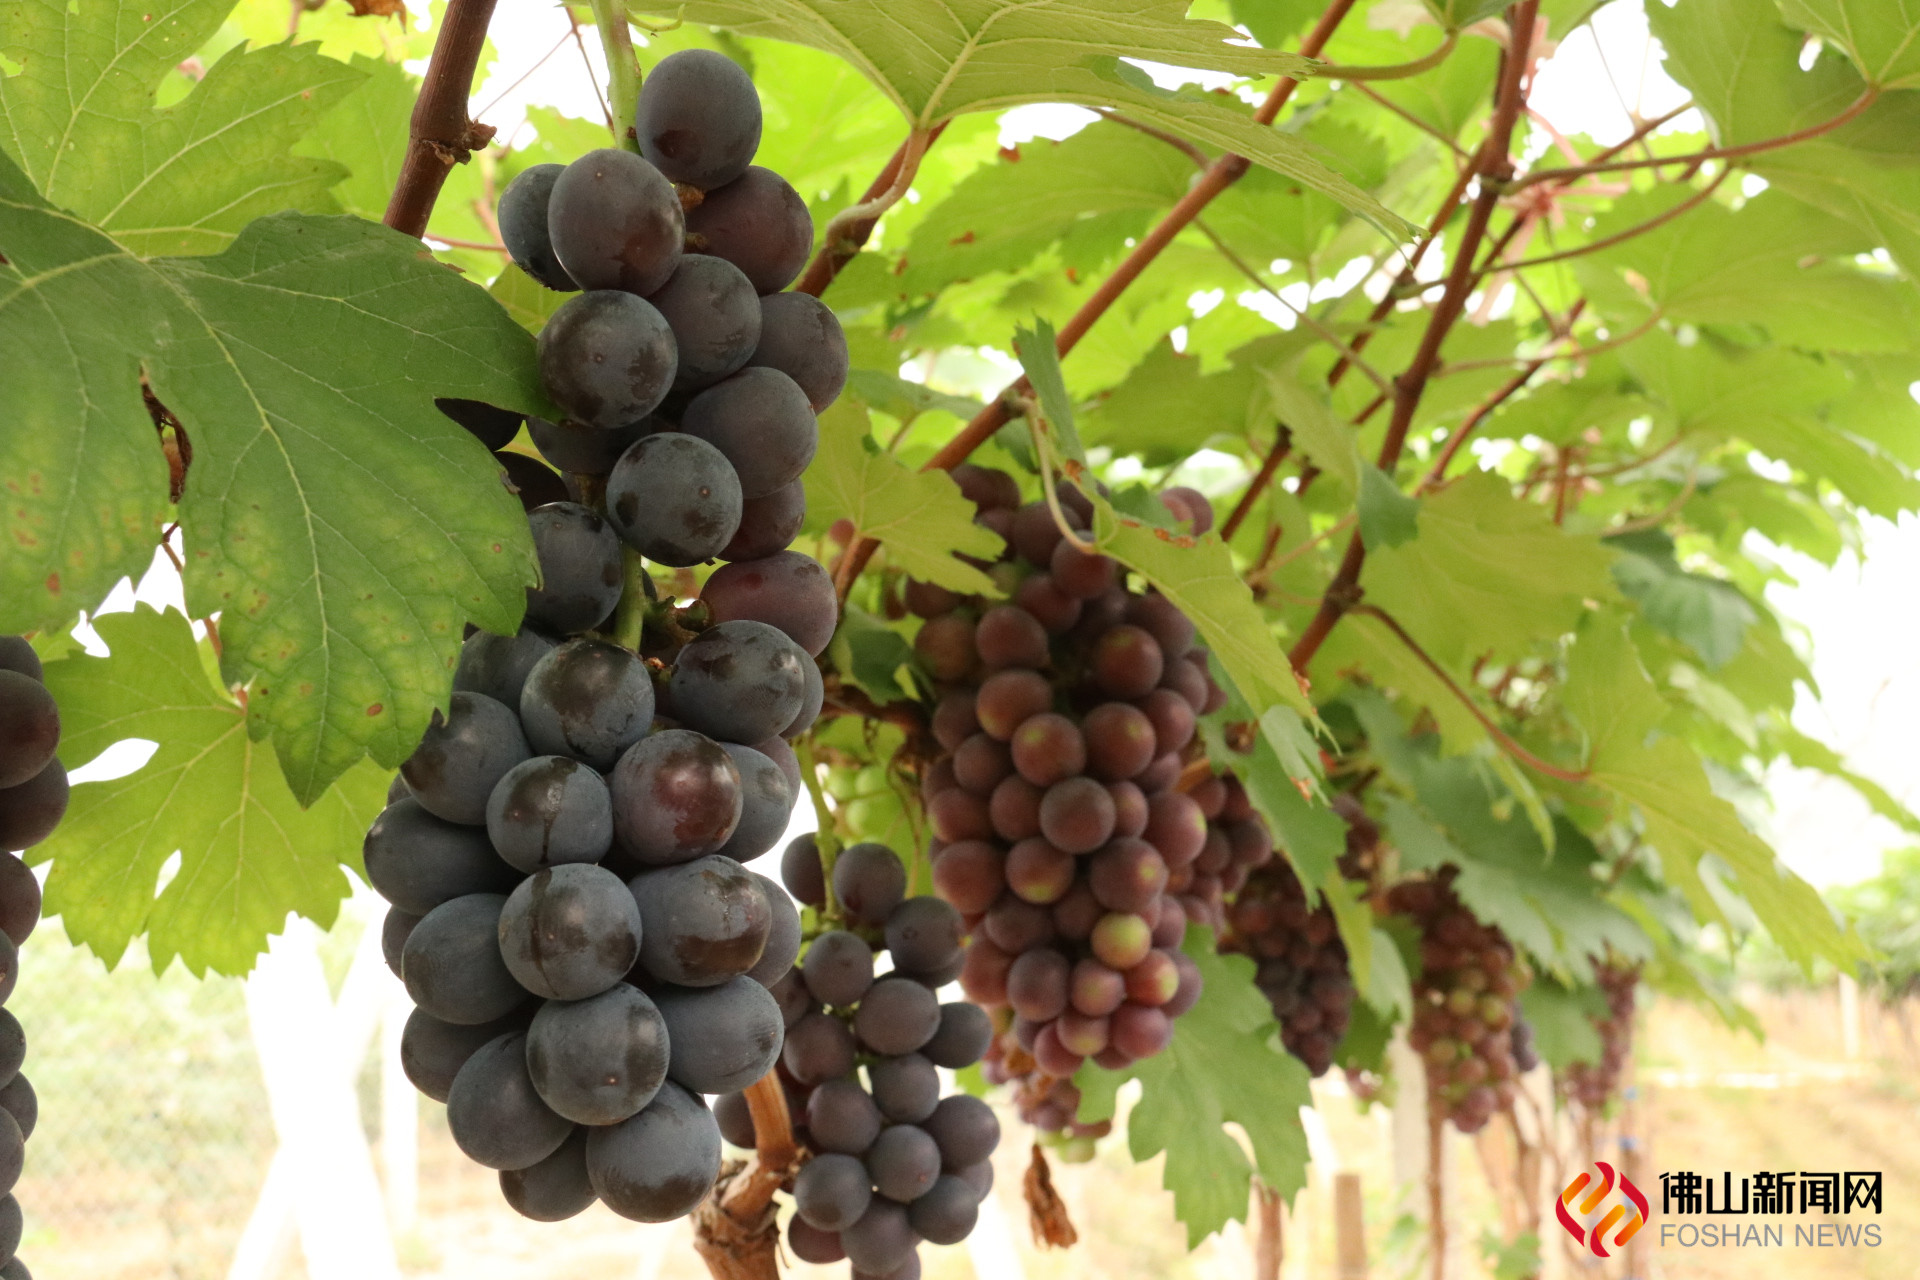 又到一年摘果季，禅城罗南生态园的葡萄熟啦。